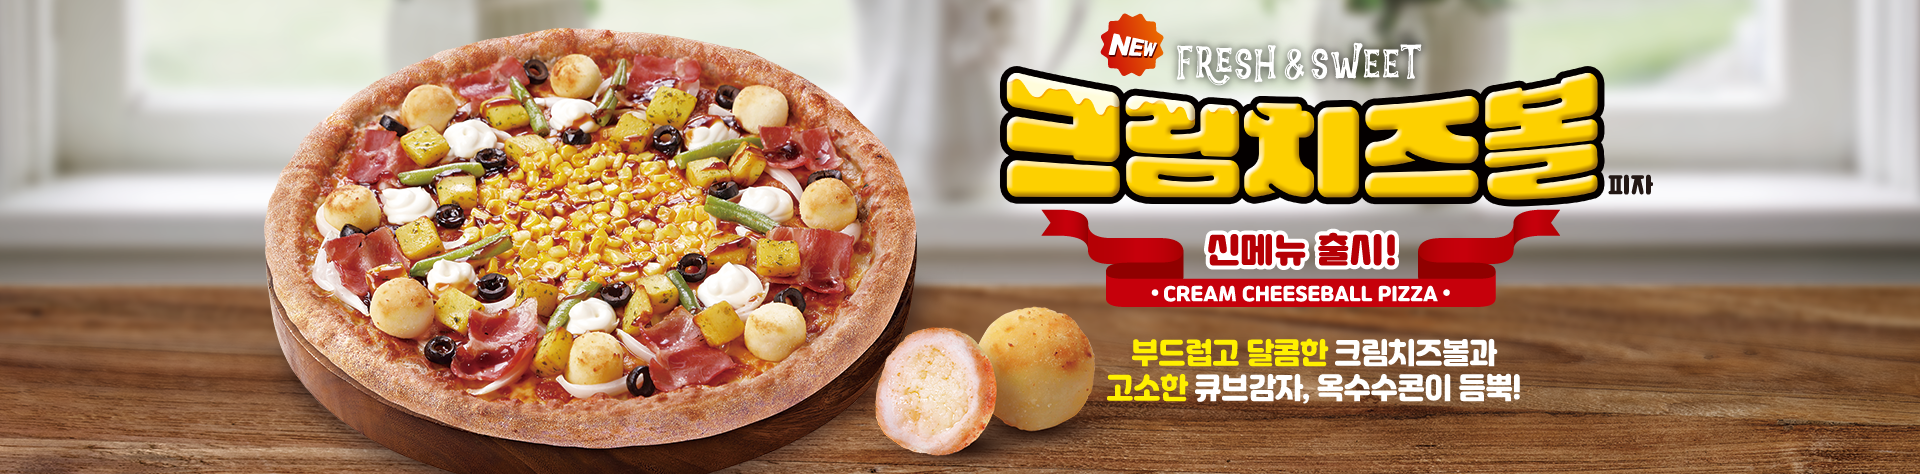 신메뉴 크림치즈볼 피자 출시!